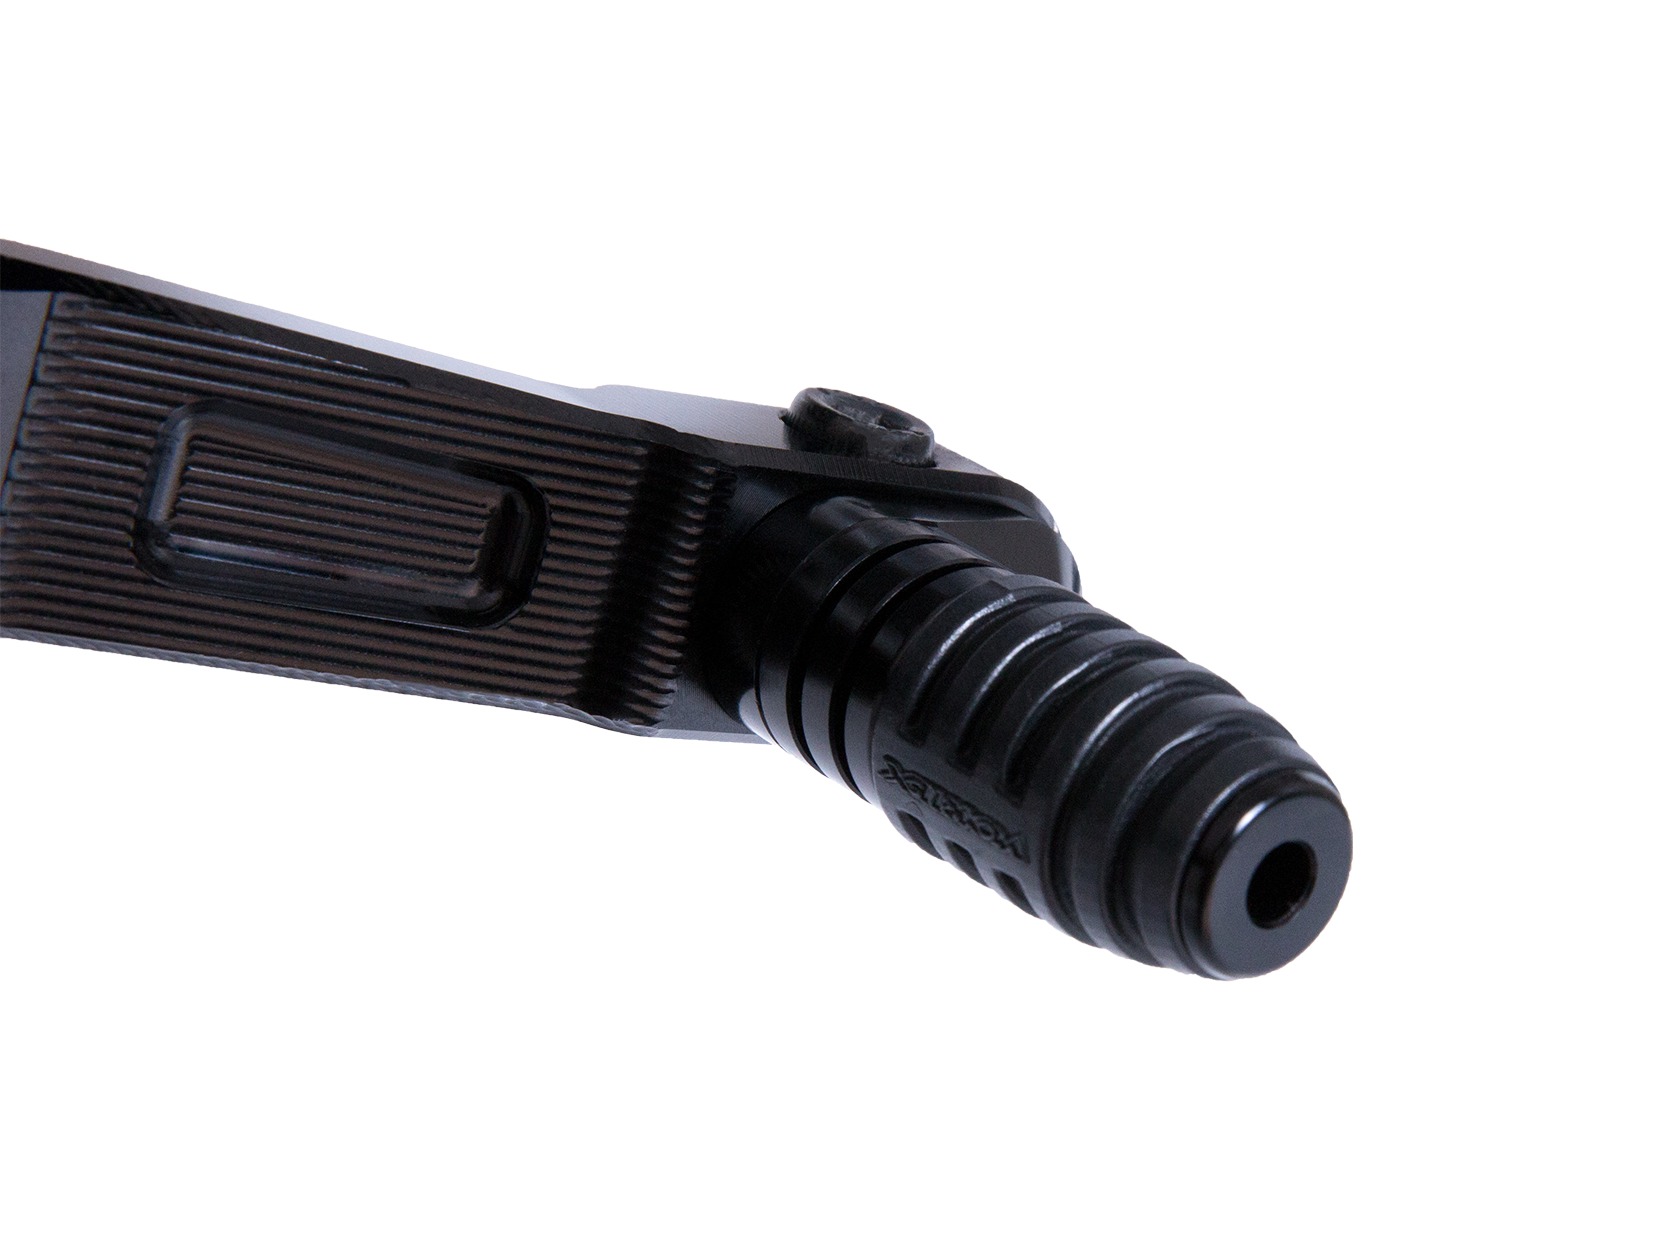 V3 Adjustable Rearset - Black - For 15-17 BMW S1000RR - Click Image to Close